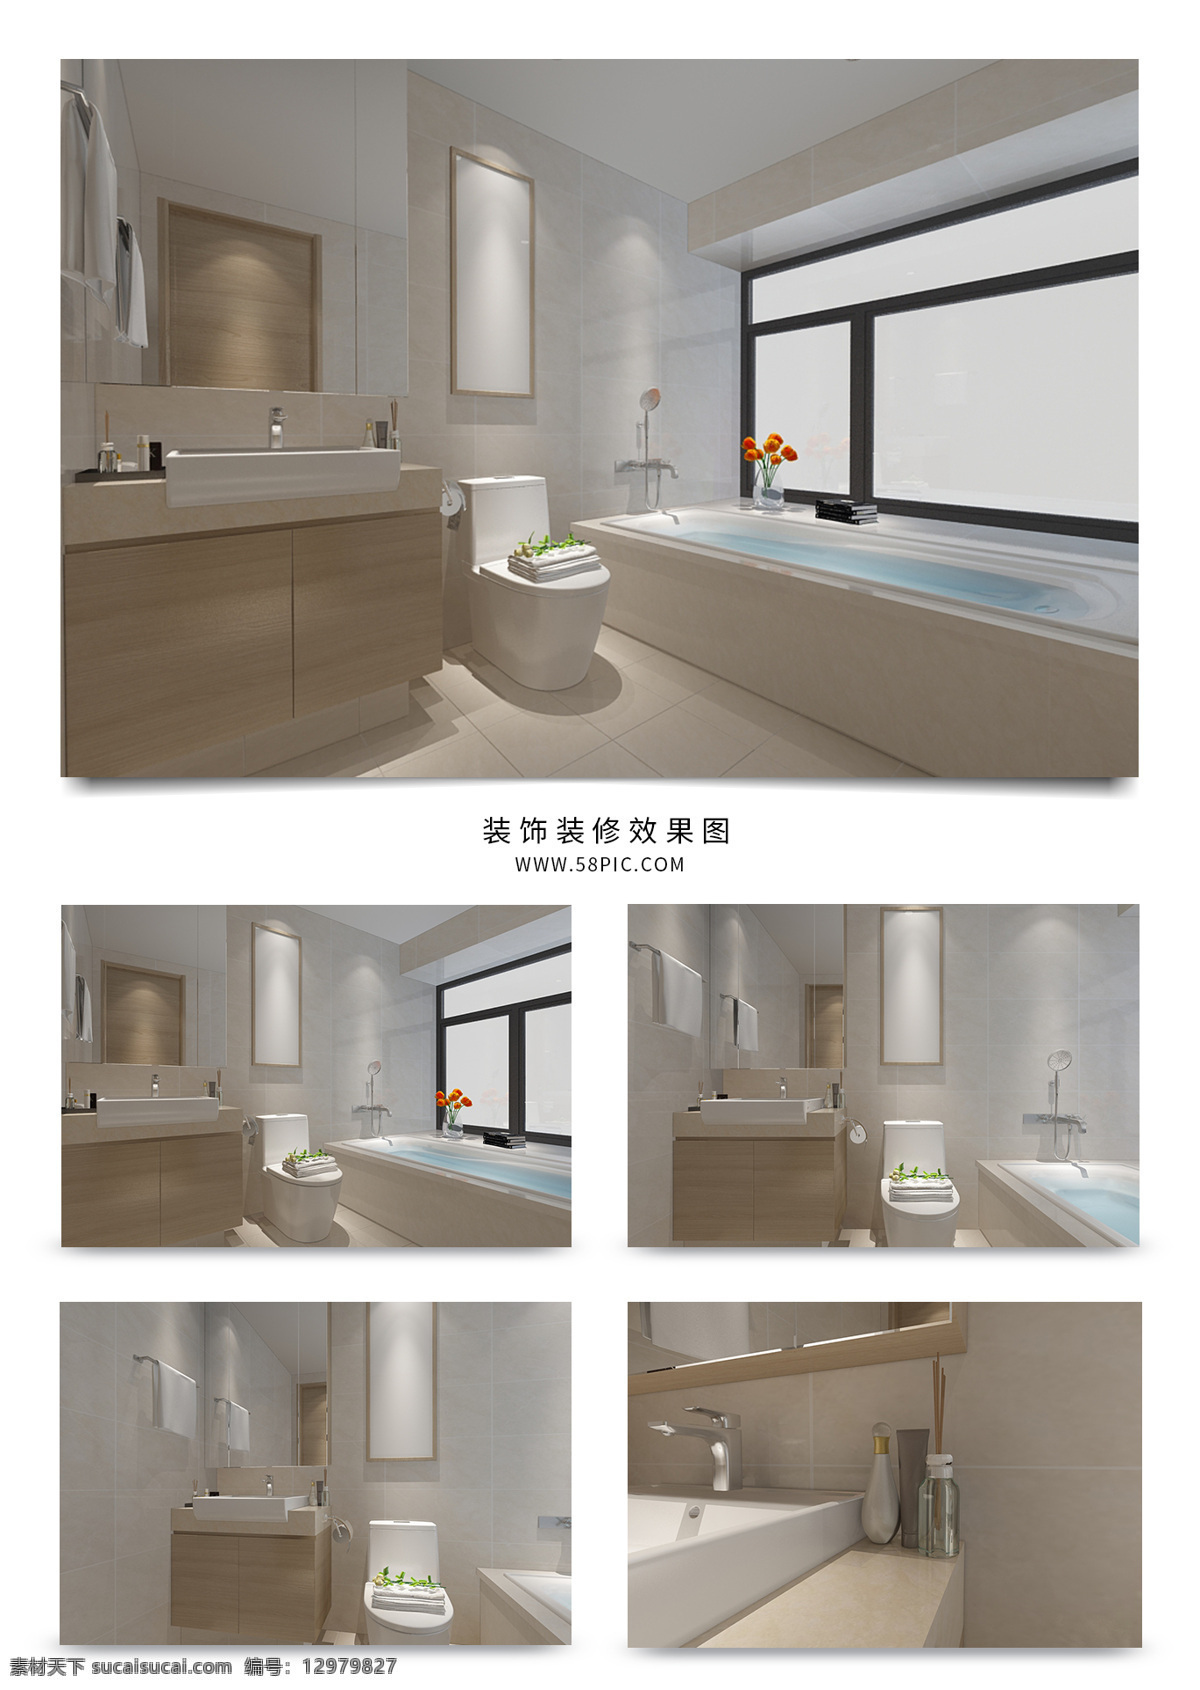 现代 风格 简约 卫生间 3d 3d下载 3d设计 3d模型 3d效果图 模型 效果图 卫生间模型 卫生间效果图 卫浴模型 浴室模型 浴室效果图 家装效果图 现代卫浴